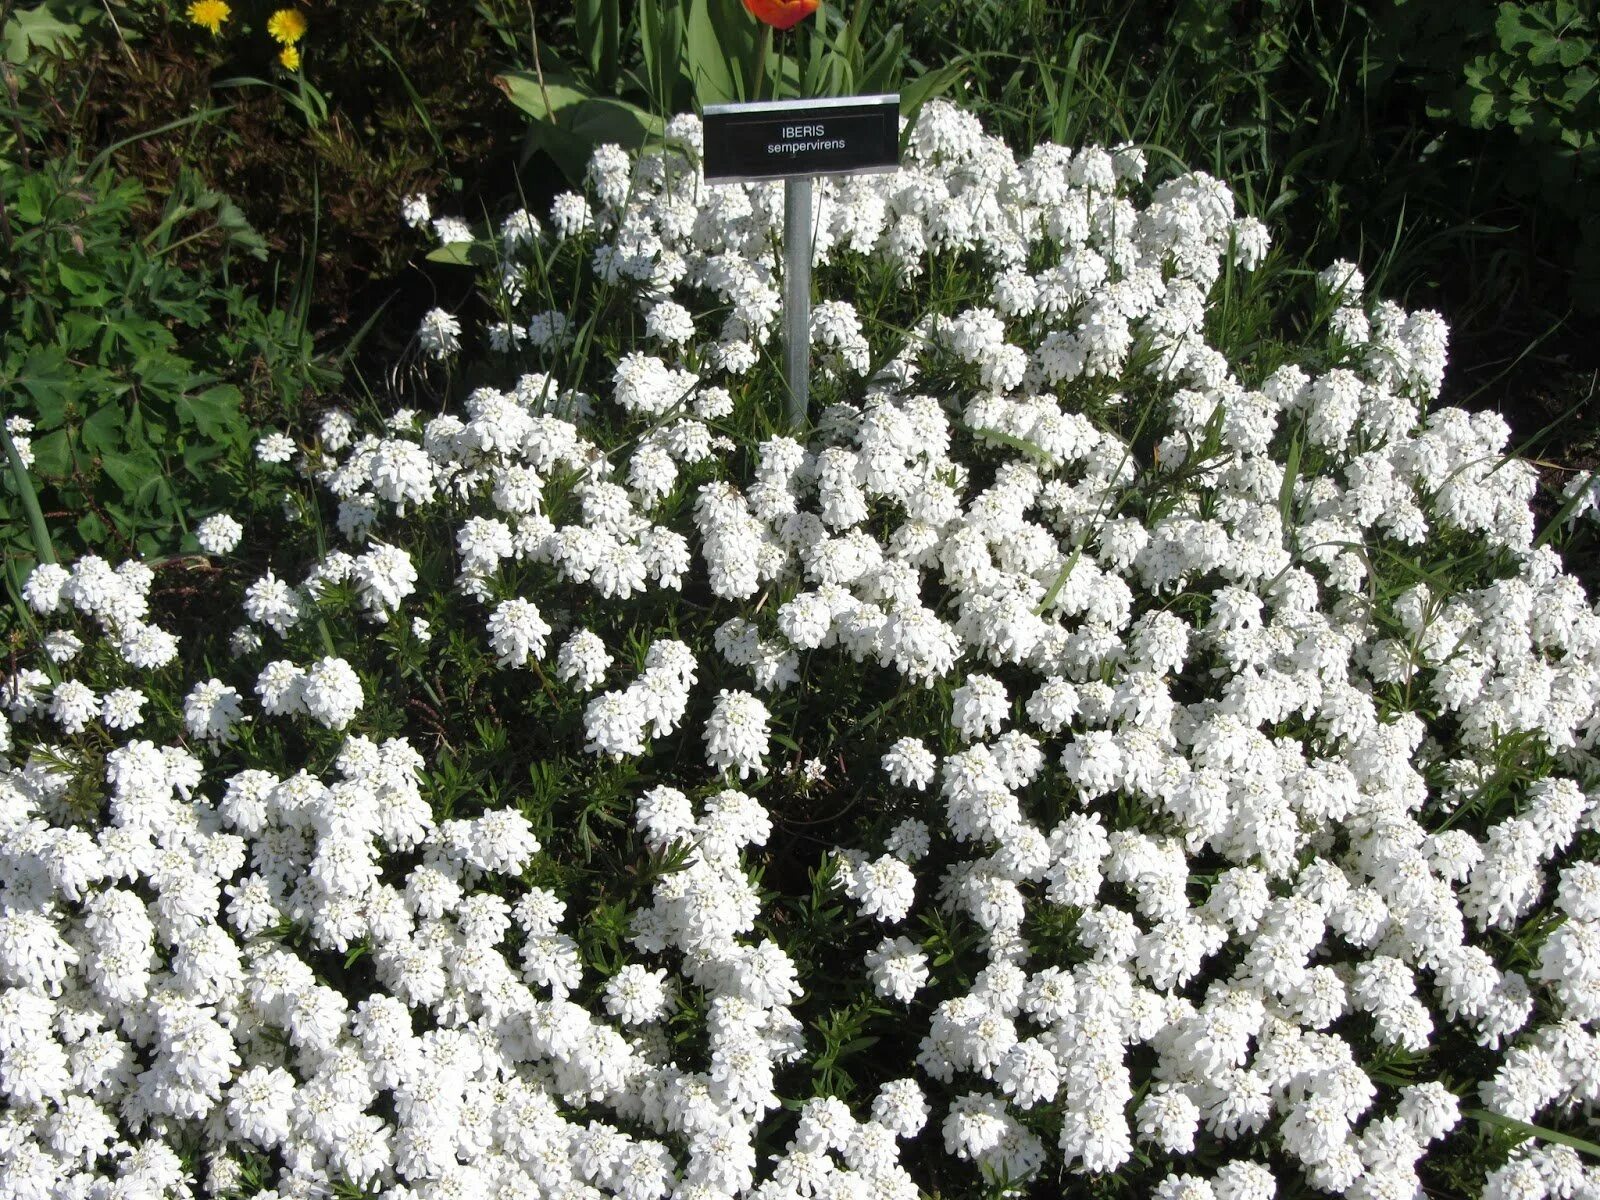 Названия белых многолетних цветов. Иберис вечнозеленый. Иберис вечнозеленый (sempervirens). Иберис вечнозеленый Сноуфлейк. Иберис Сноуфлейк многолетний.